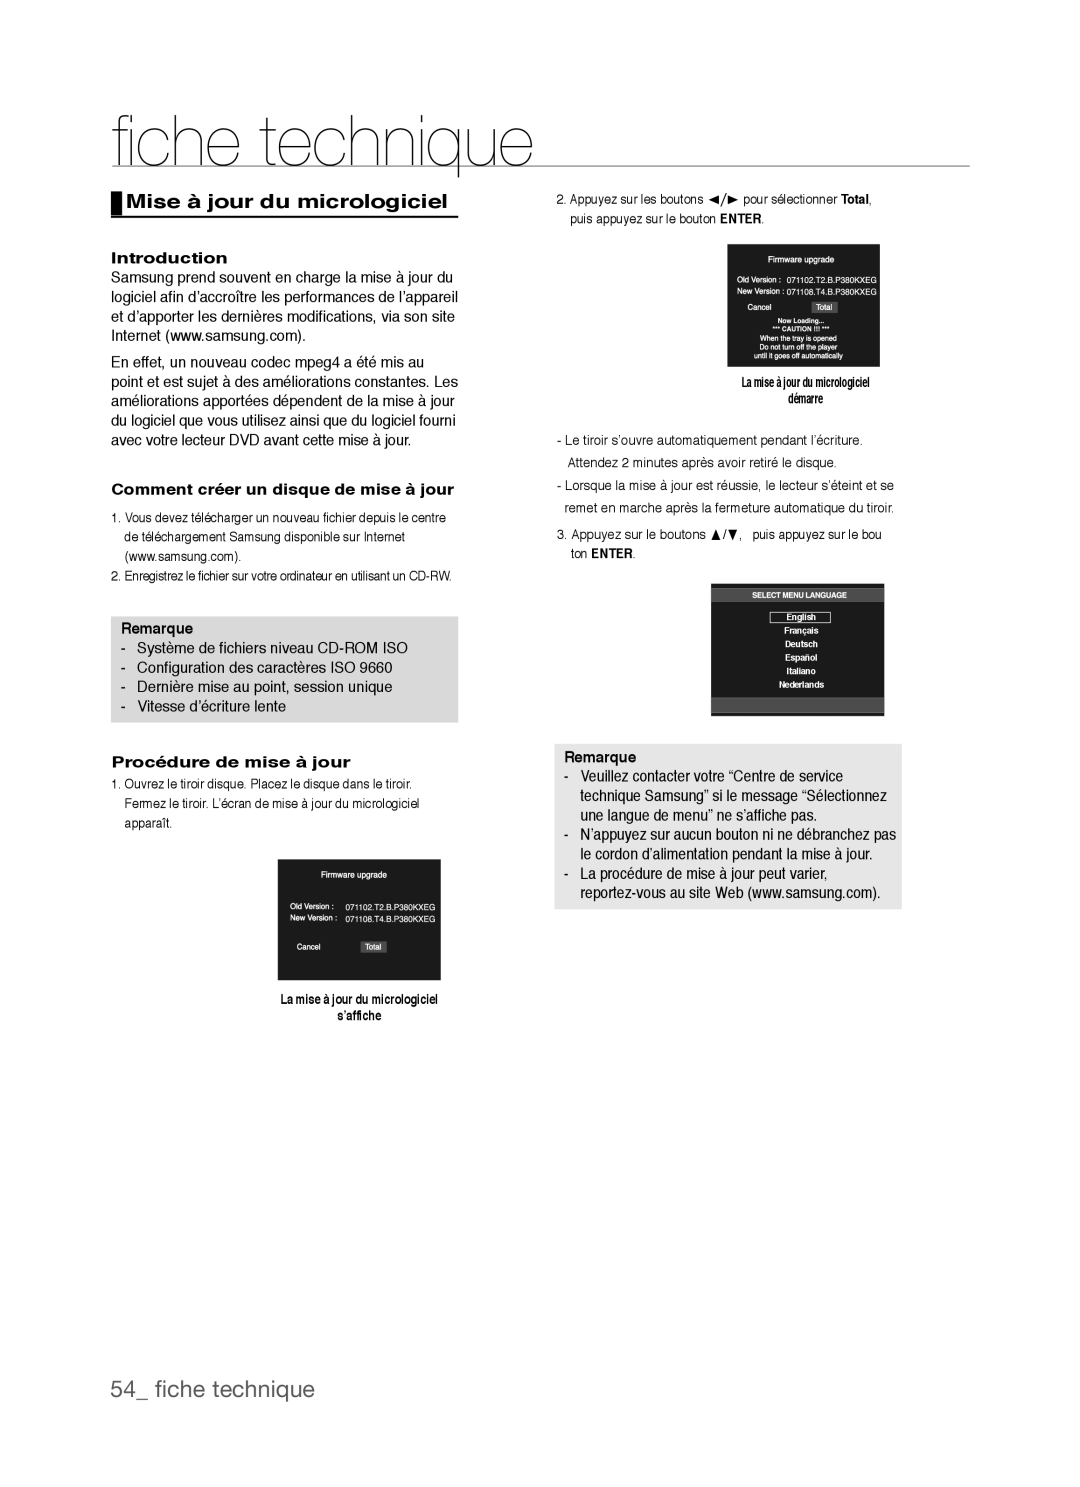 Samsung DVD-P390, AK68-01770G ﬁ che technique, 54 ﬁche technique, Mise à jour du micrologiciel, Introduction, Remarque 